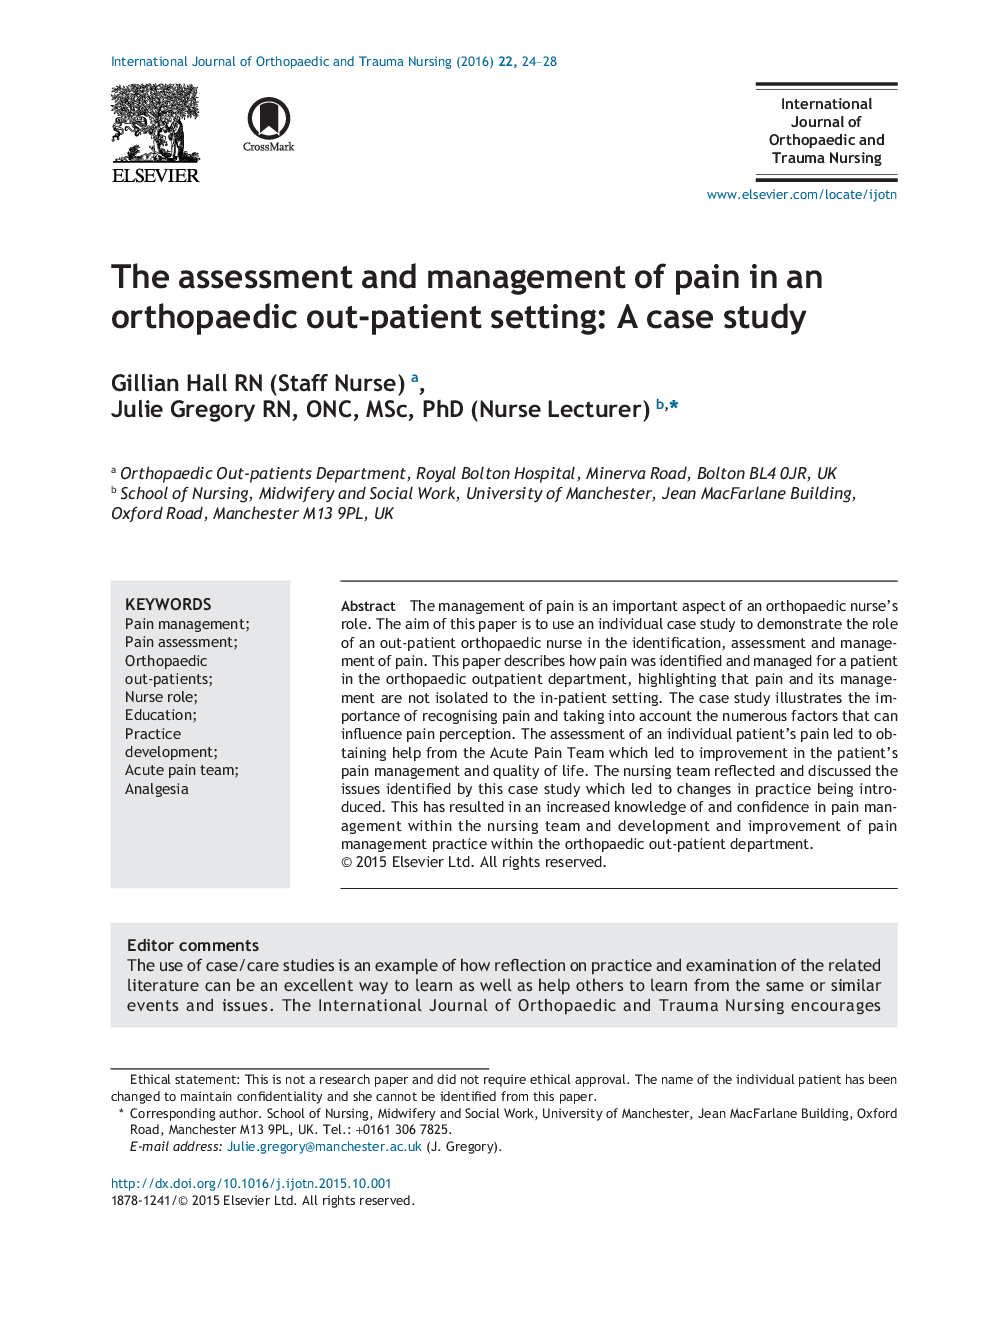 ارزیابی و مدیریت درد در یک محیط ارتوپدیک خارج از بیمار: مطالعه موردی